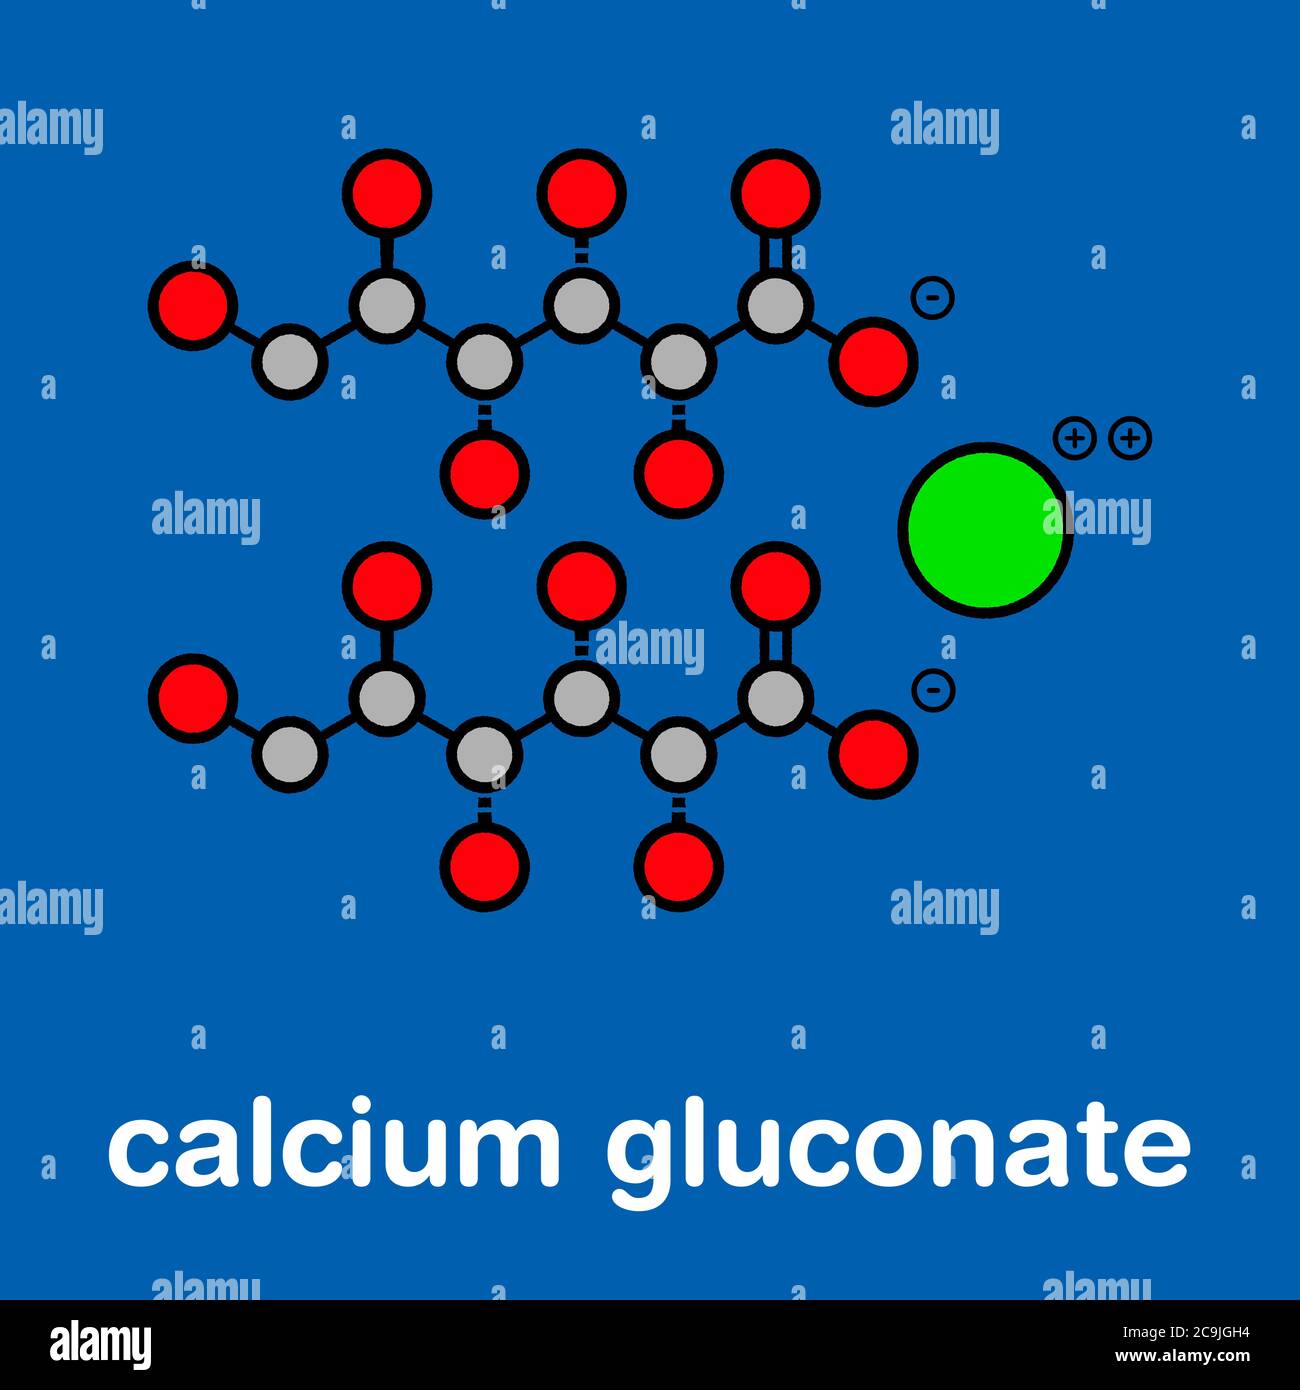 Calciumgluconat-Medikament. Lösliche Form von Ca, verwendet, um Magnesium Überdosis, Hypokalzämie und Fluorwasserstoffsäure (HF) Verbrennungen zu behandeln. Stilisierte Skelettformul Stockfoto